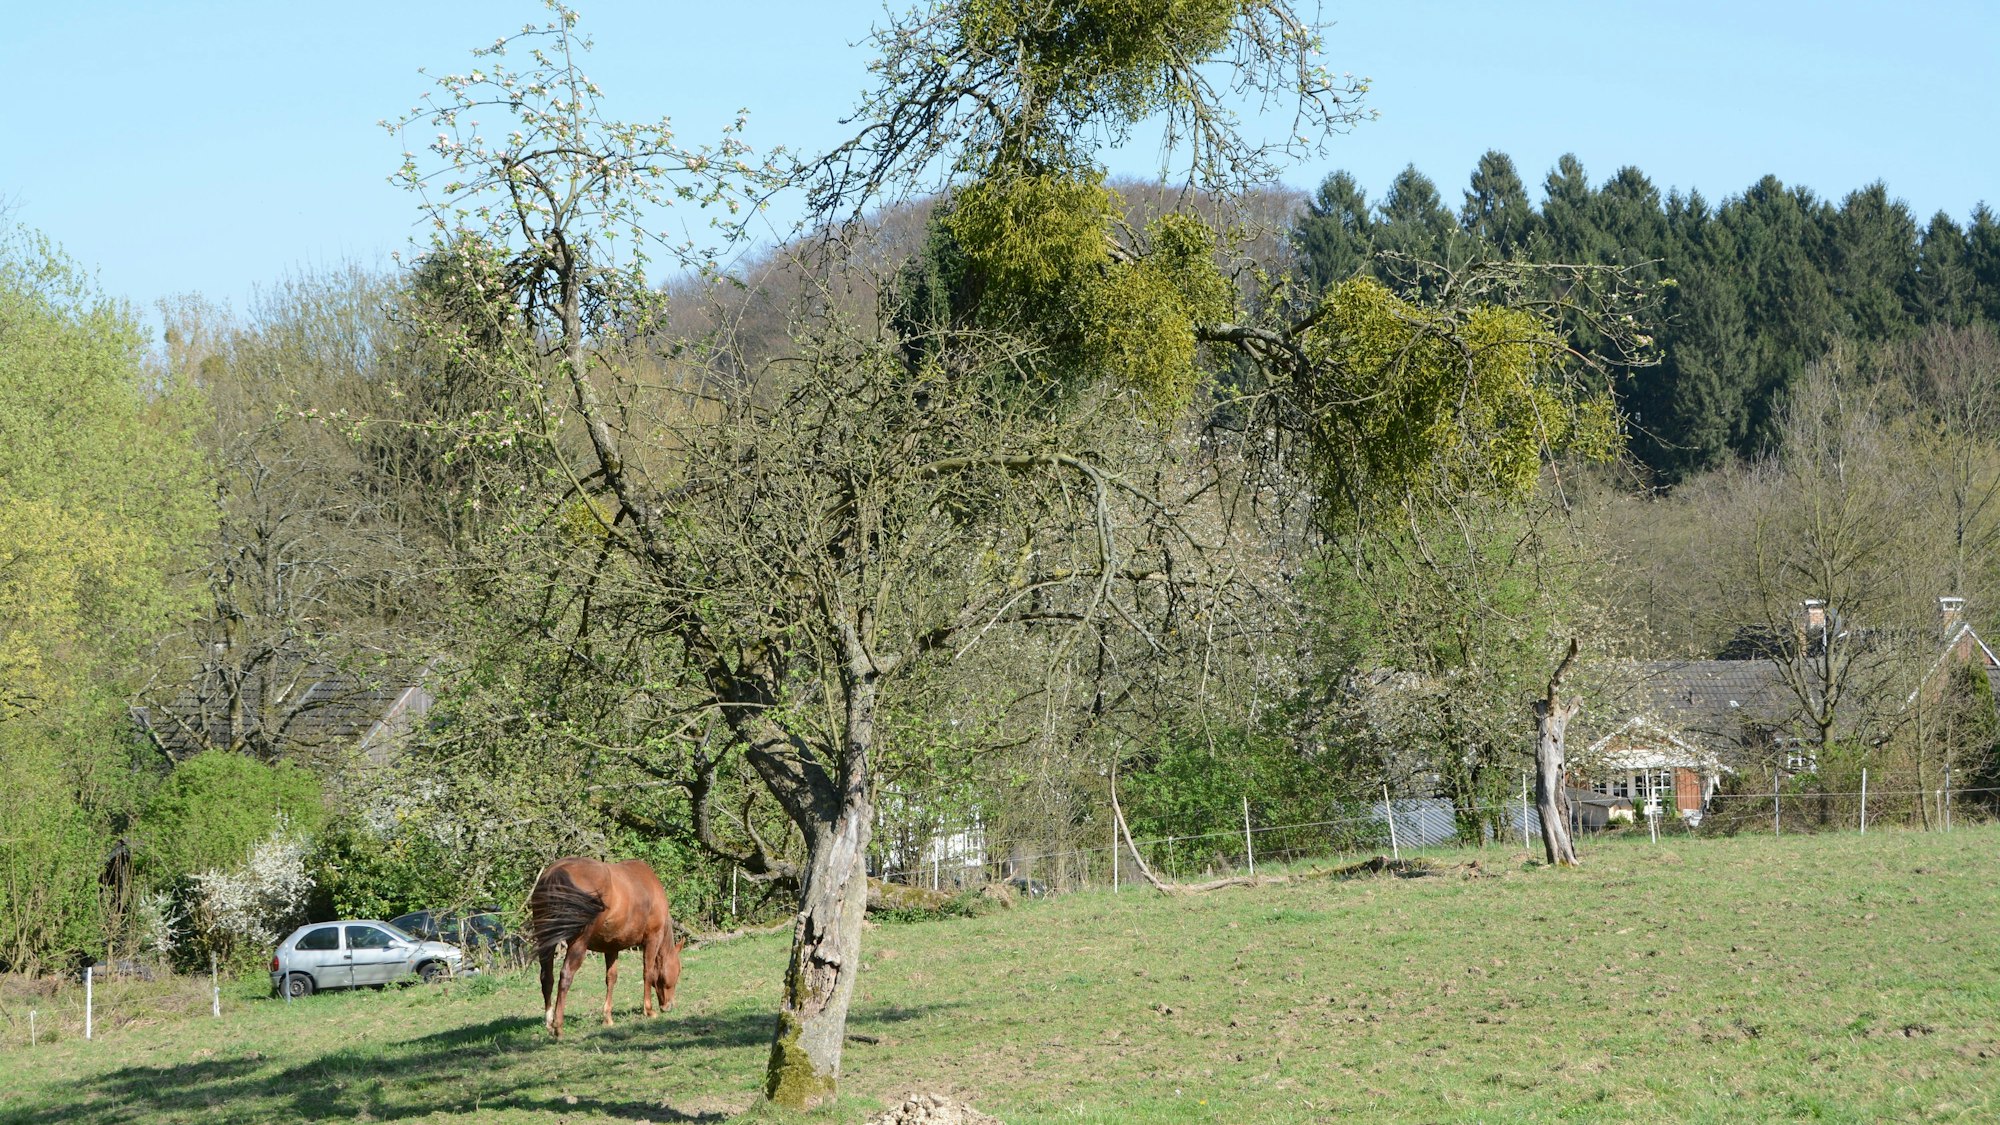 Die Mistel hat sich in einem Obstbaum festgesetzt. Der Obstbaum steht auf einer Pferdewiese. Im Hintergrund grast ein Pferd.